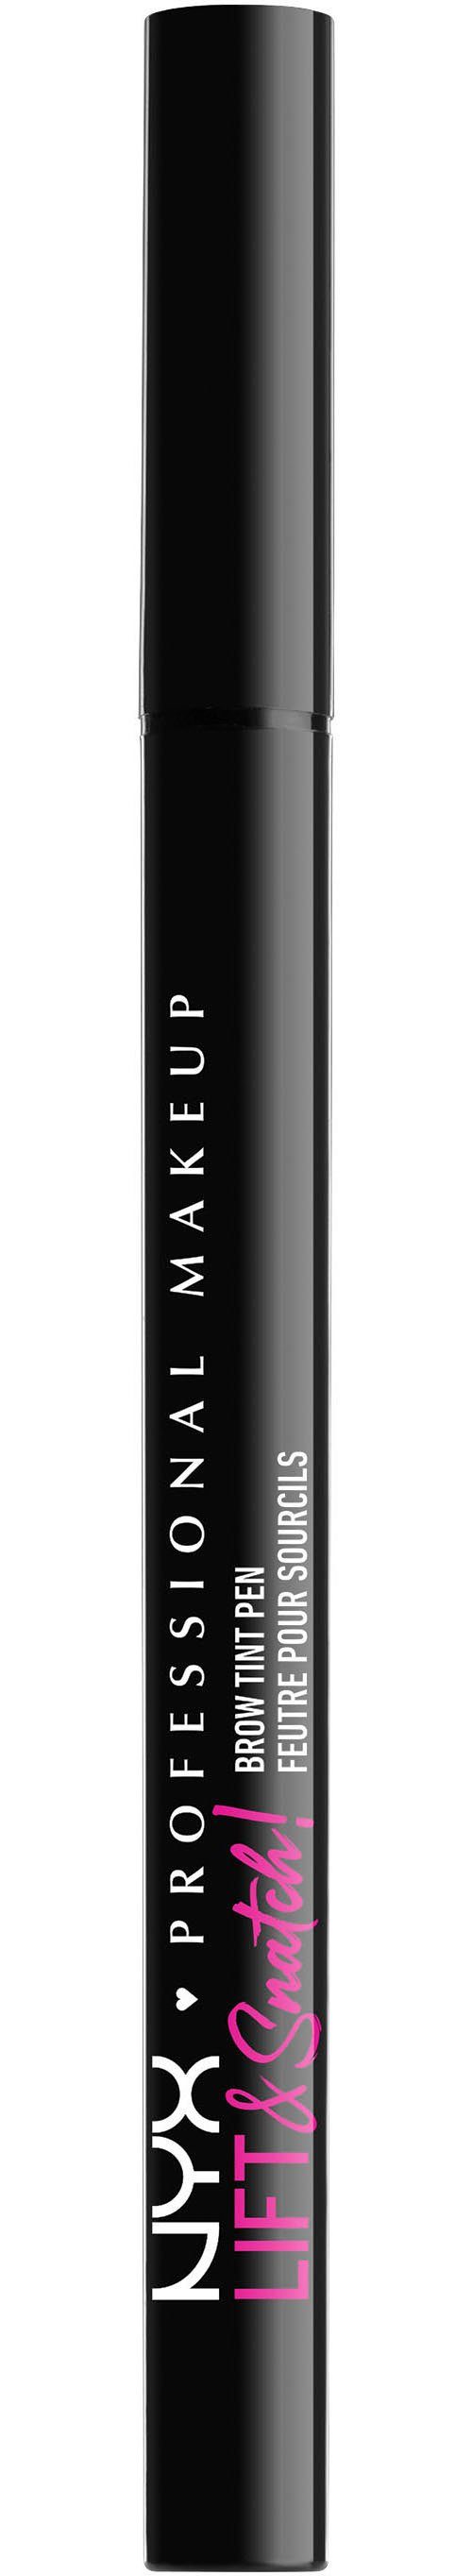 NYX Augenbrauen-Stift Professional Makeup Lift Brow Pen Snatch Tint & brunette